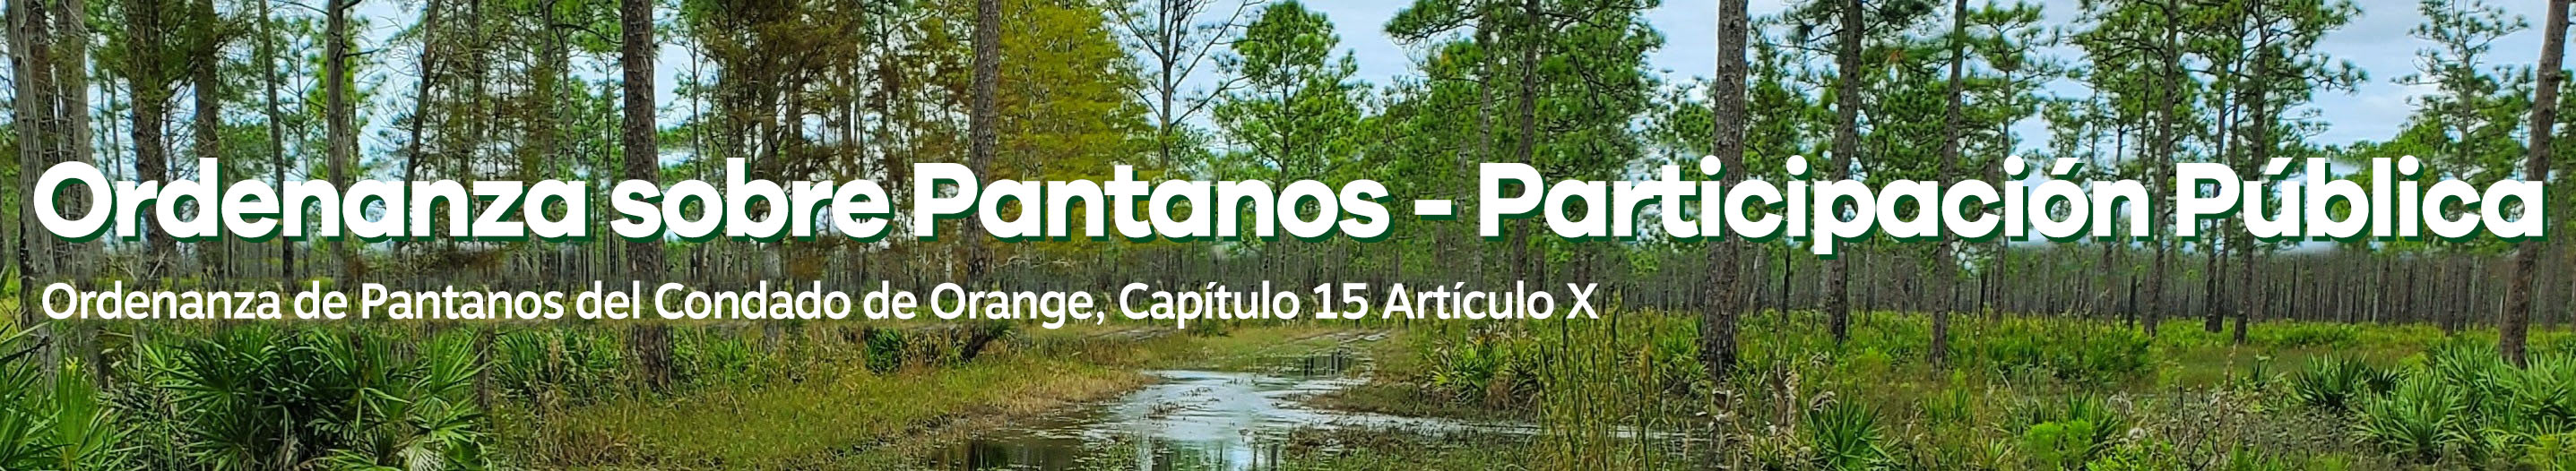 Participación Pública en la Ordenanza de Pantanos -  Ordenanza de Pantanos del Condado de Orange, Capítulo 15 Artículo X